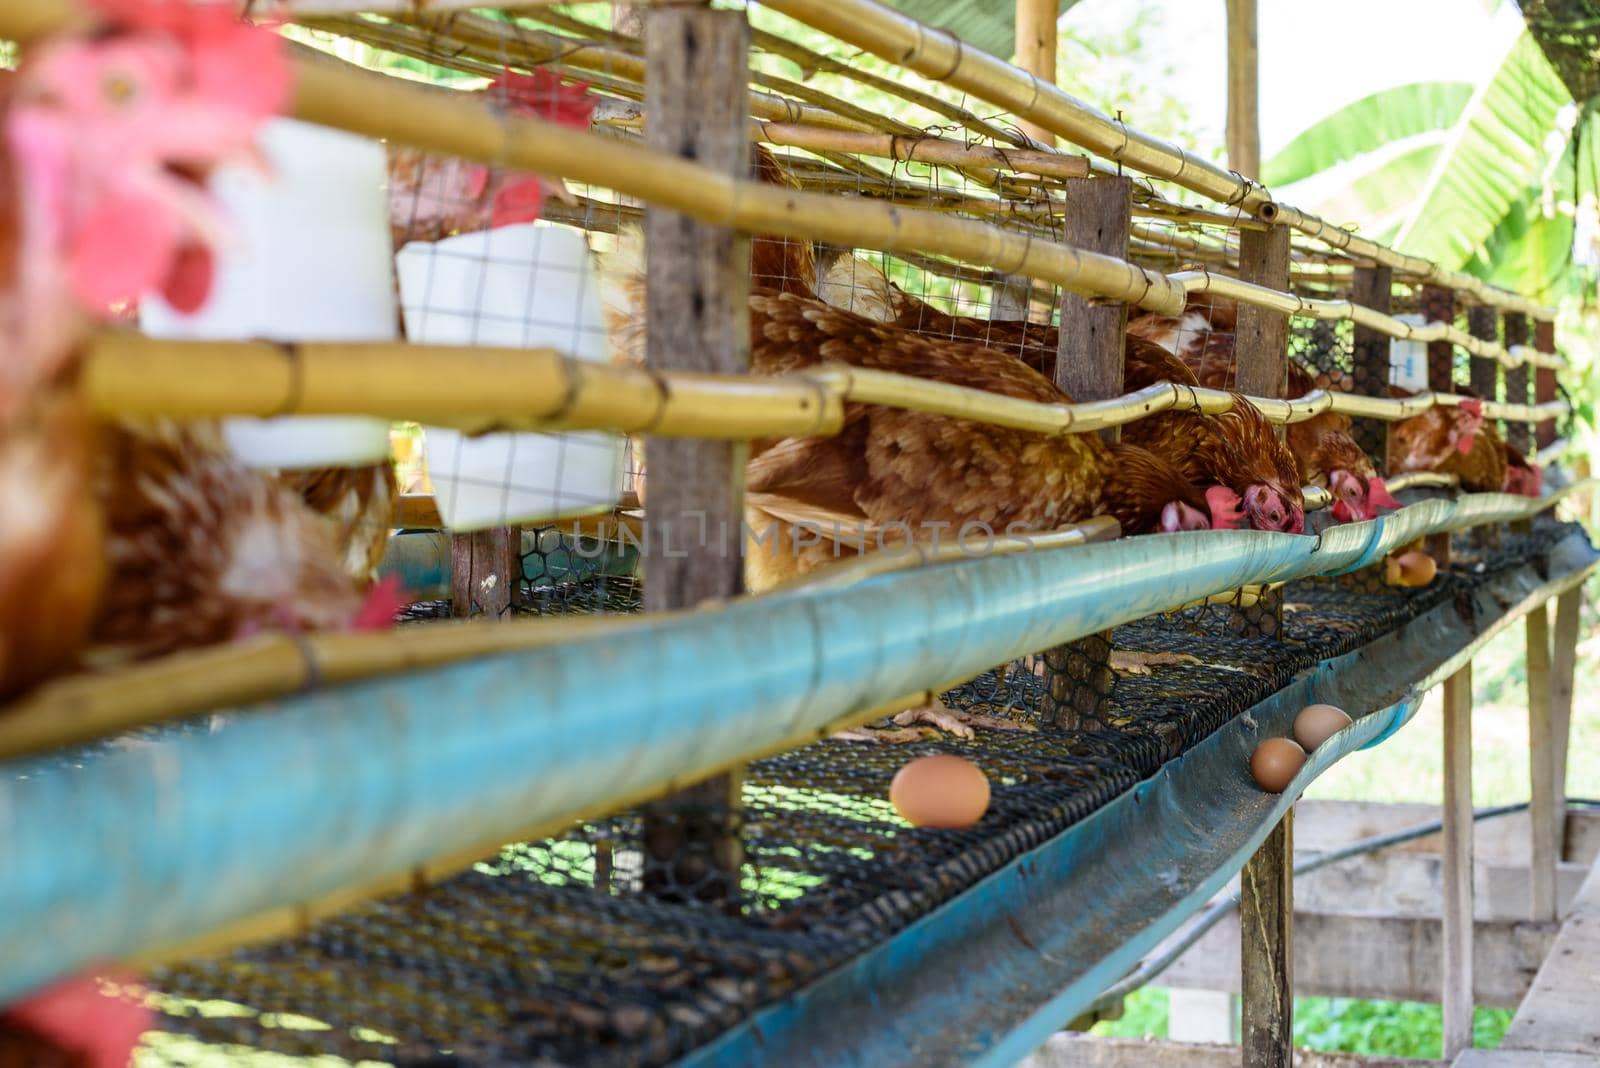 Egg chicken farm in rural Thailand by Yongkiet